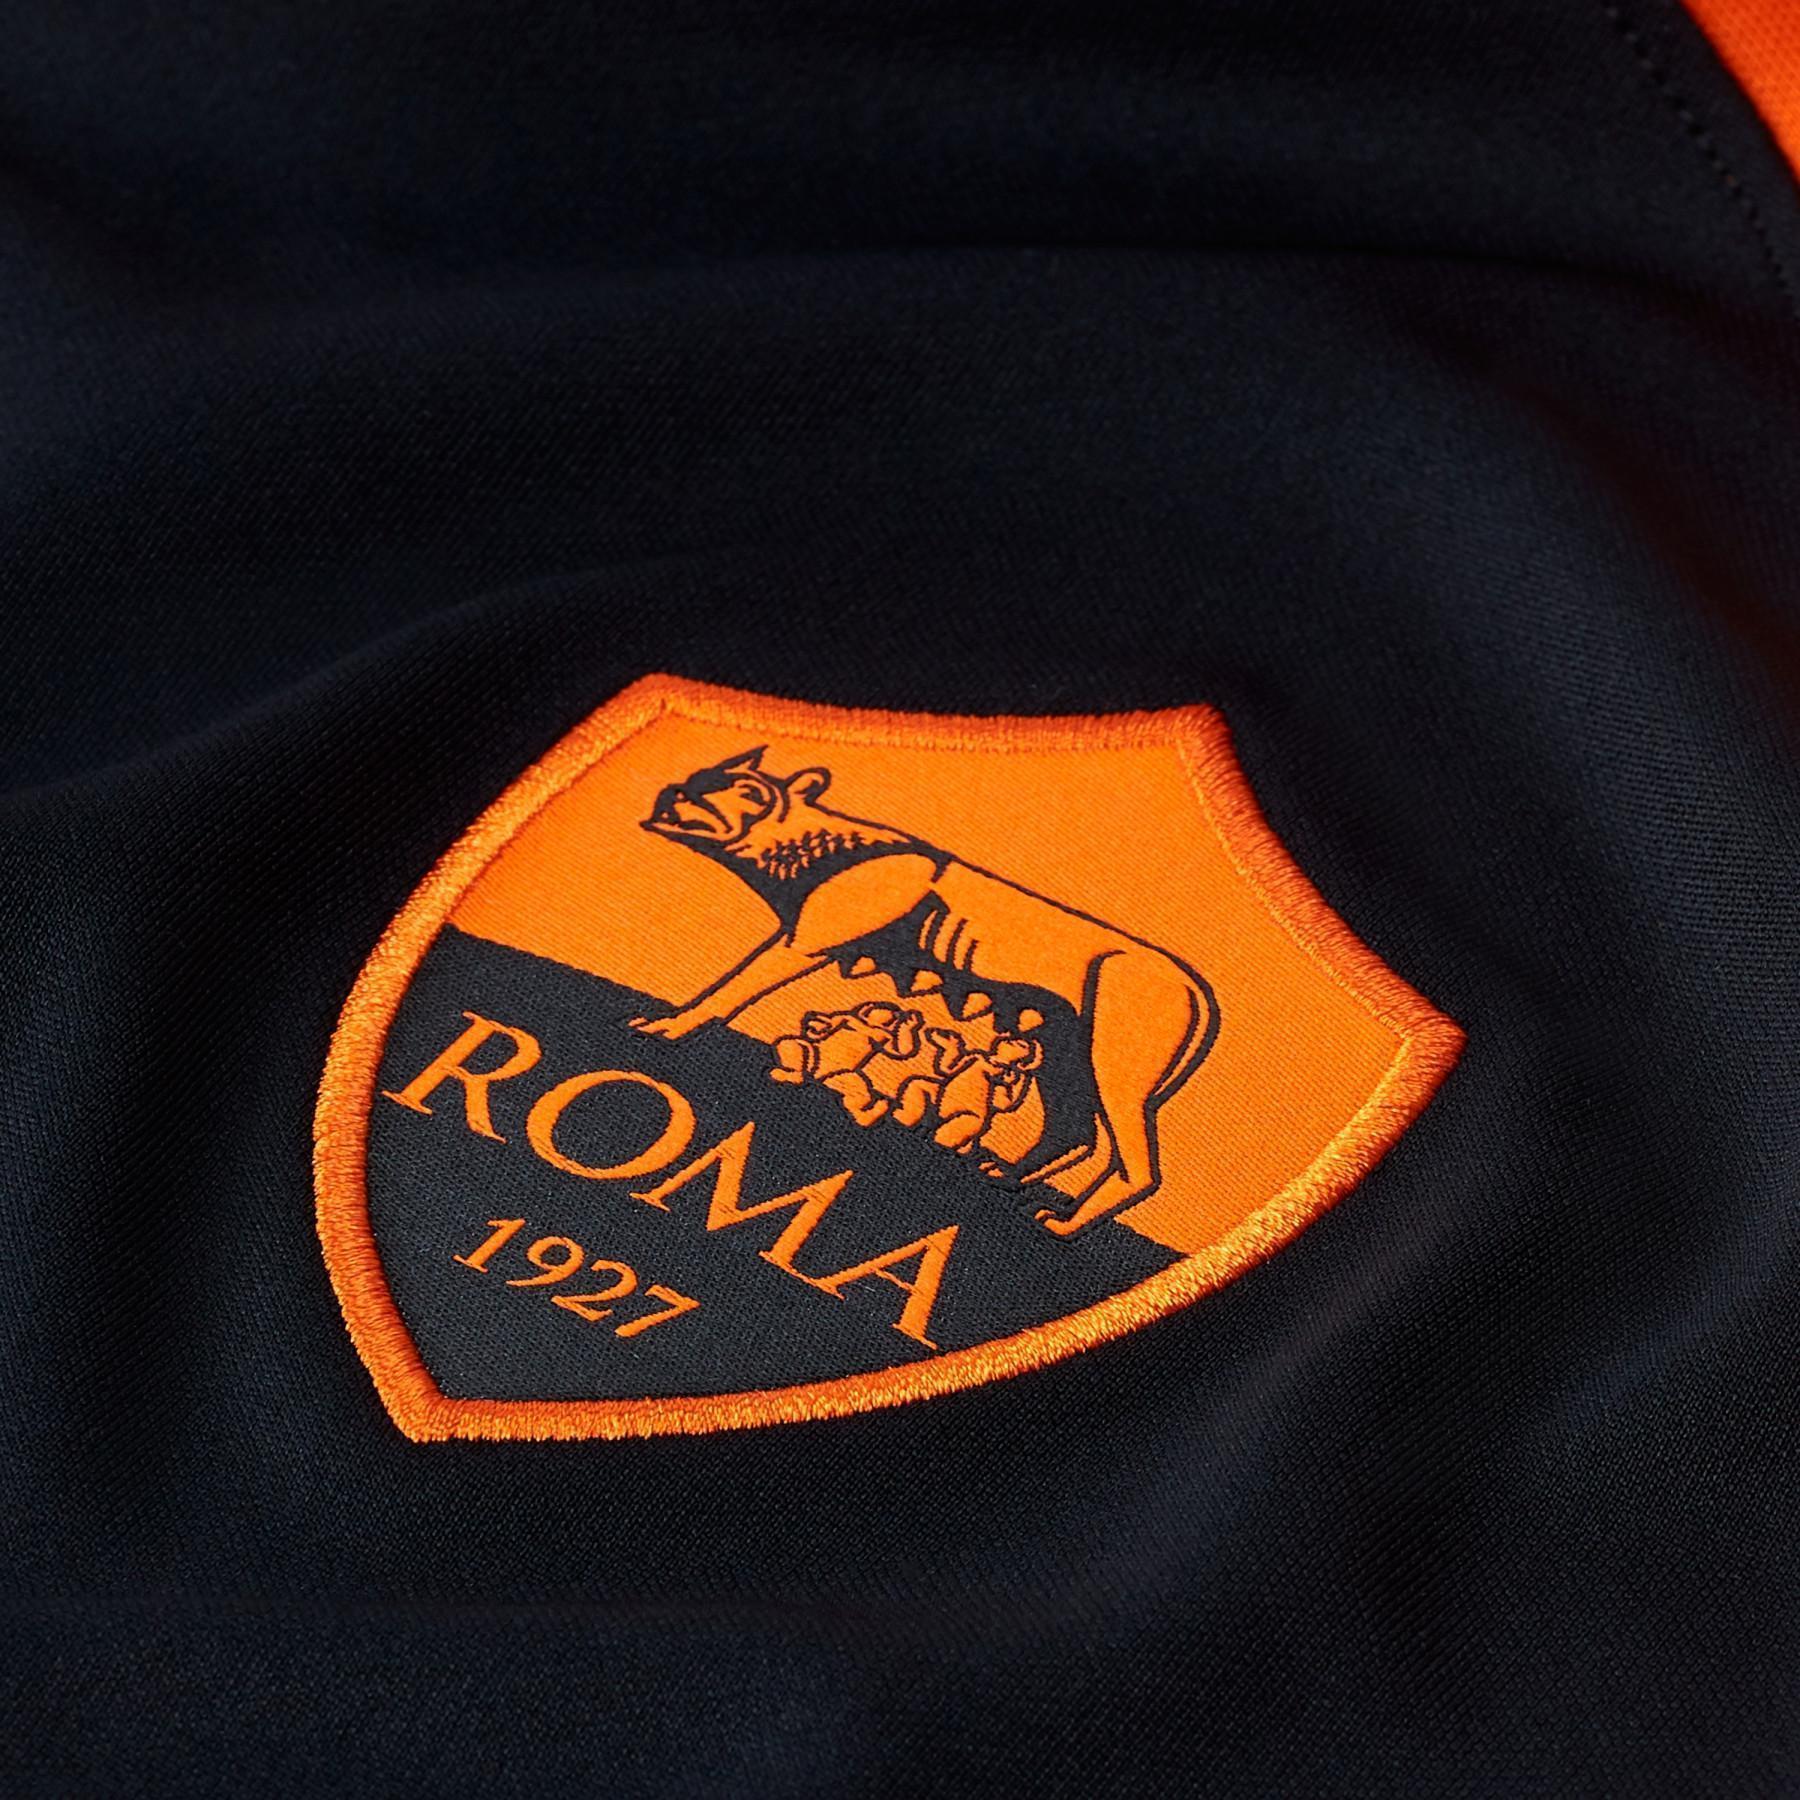 3a maglia AS Roma 2020/21